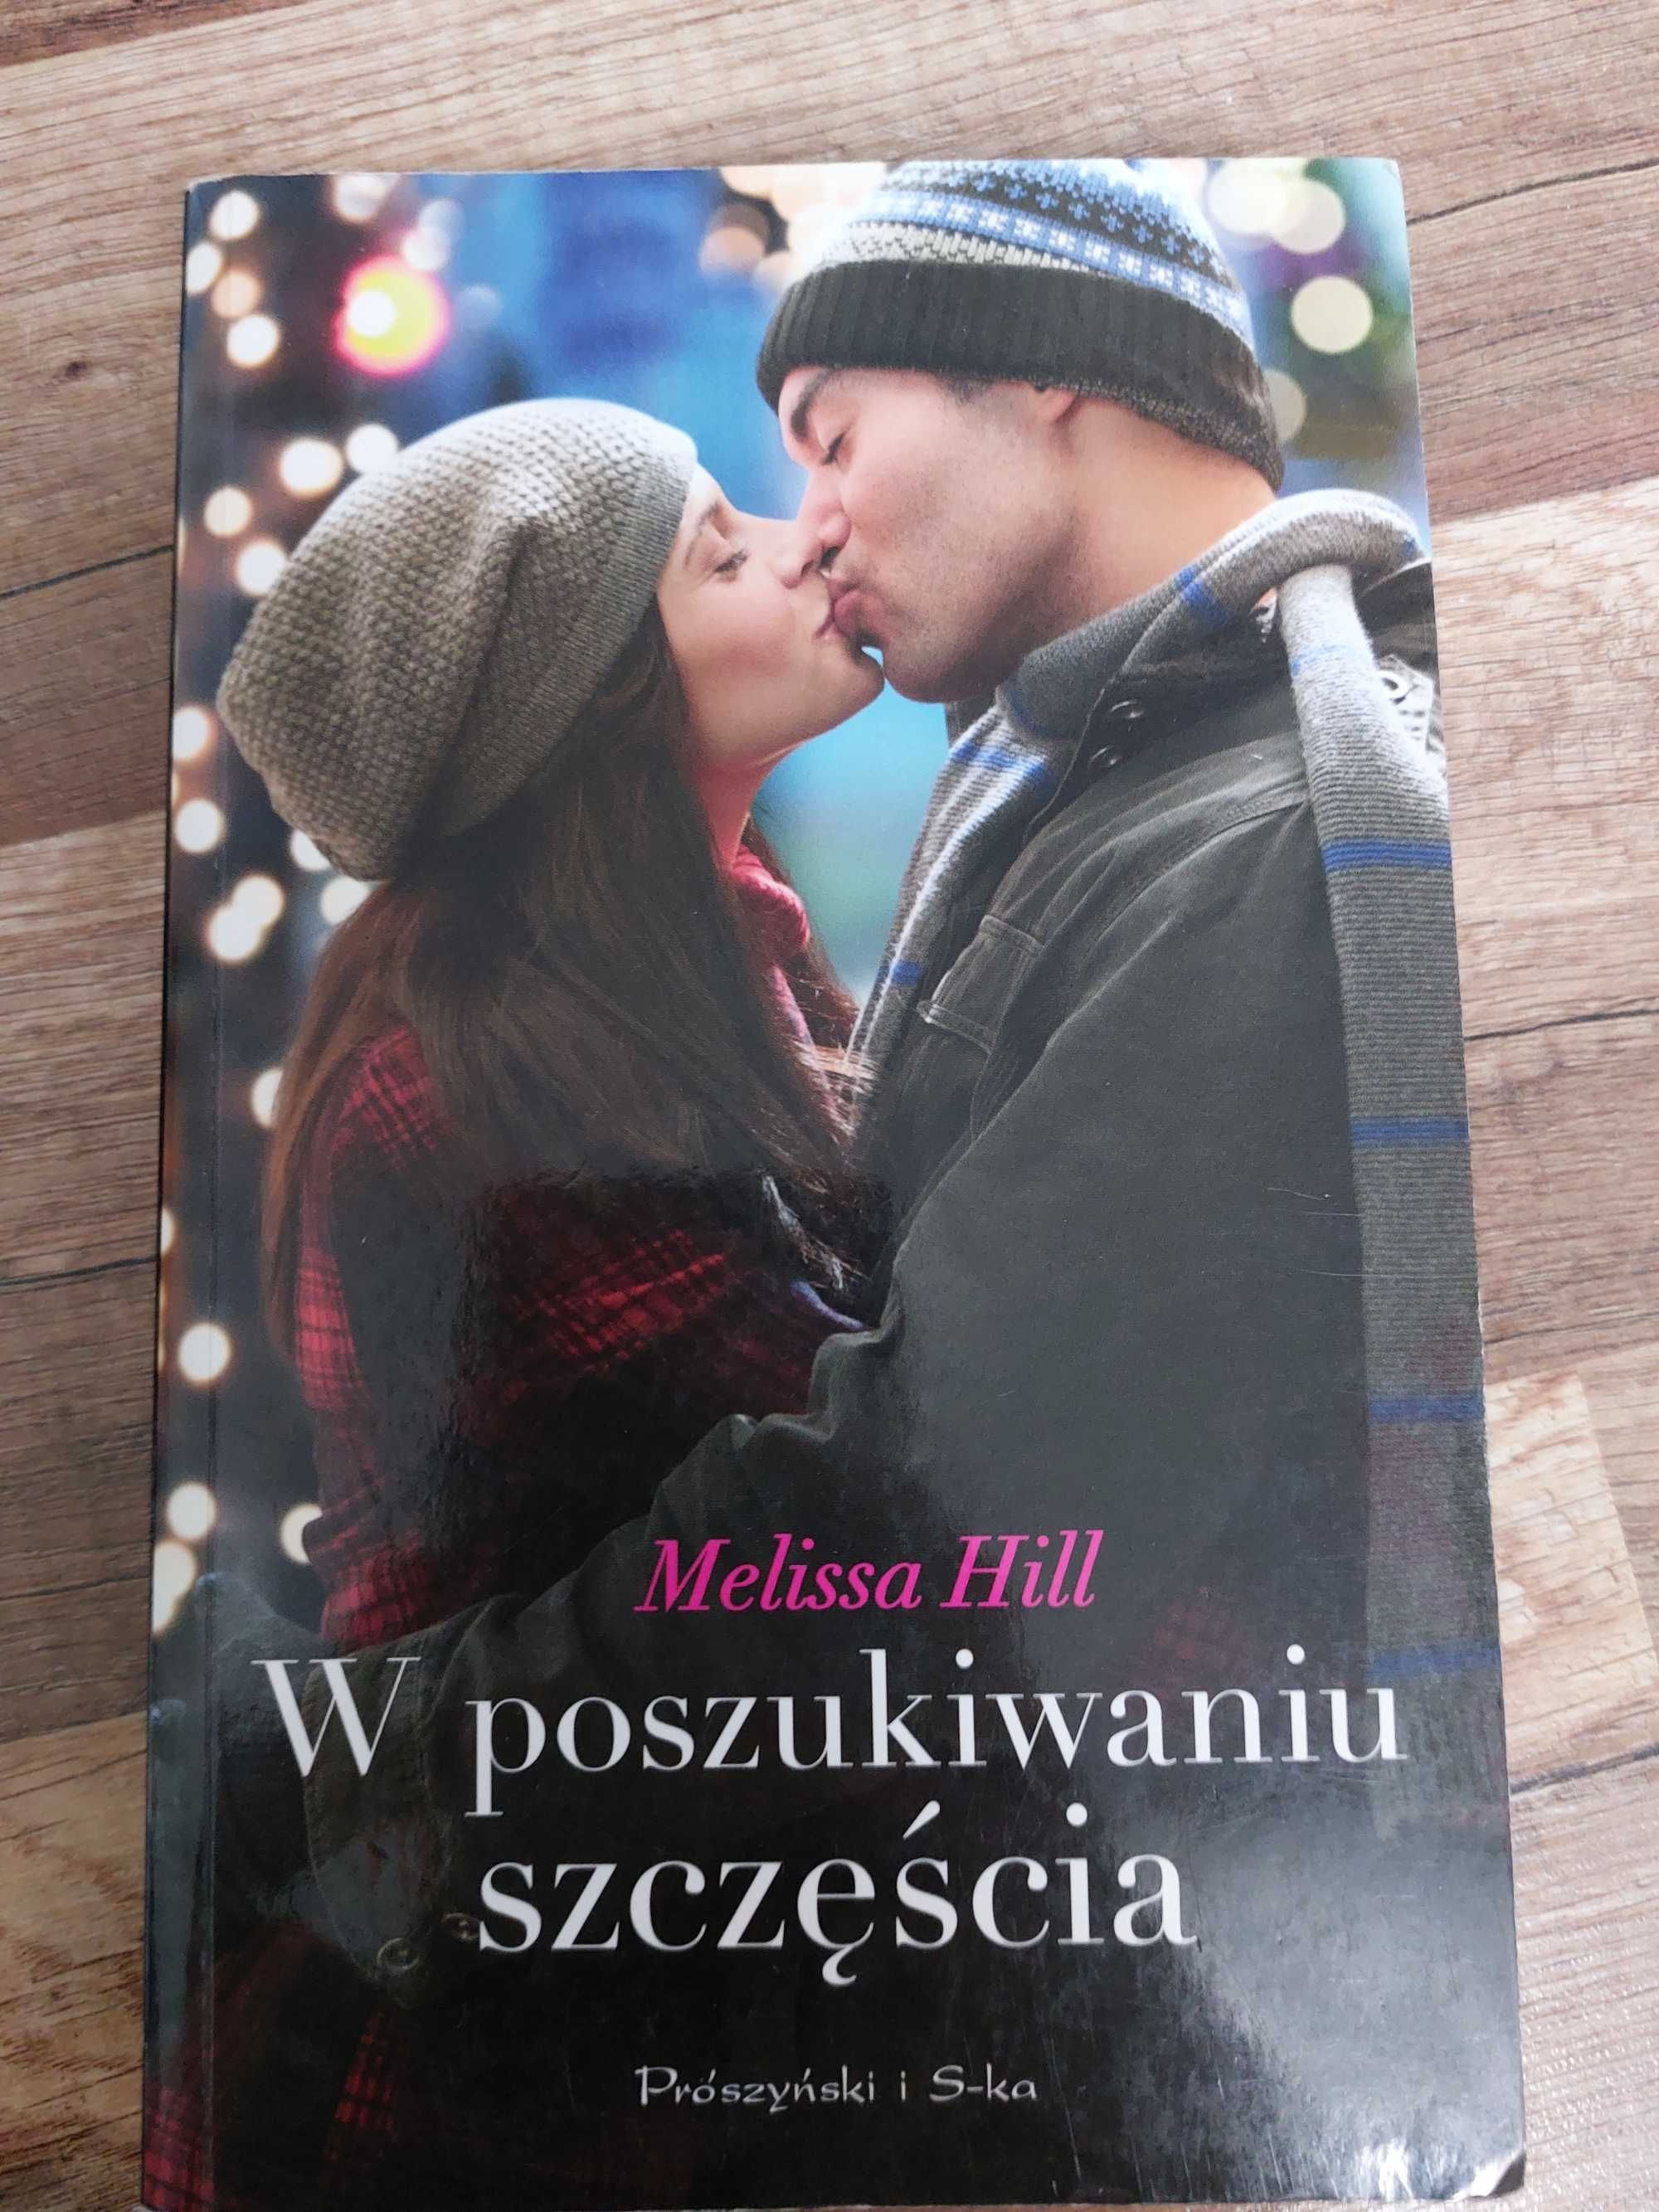 Książka  Melissa Hill W poszukiwanu szczęścia